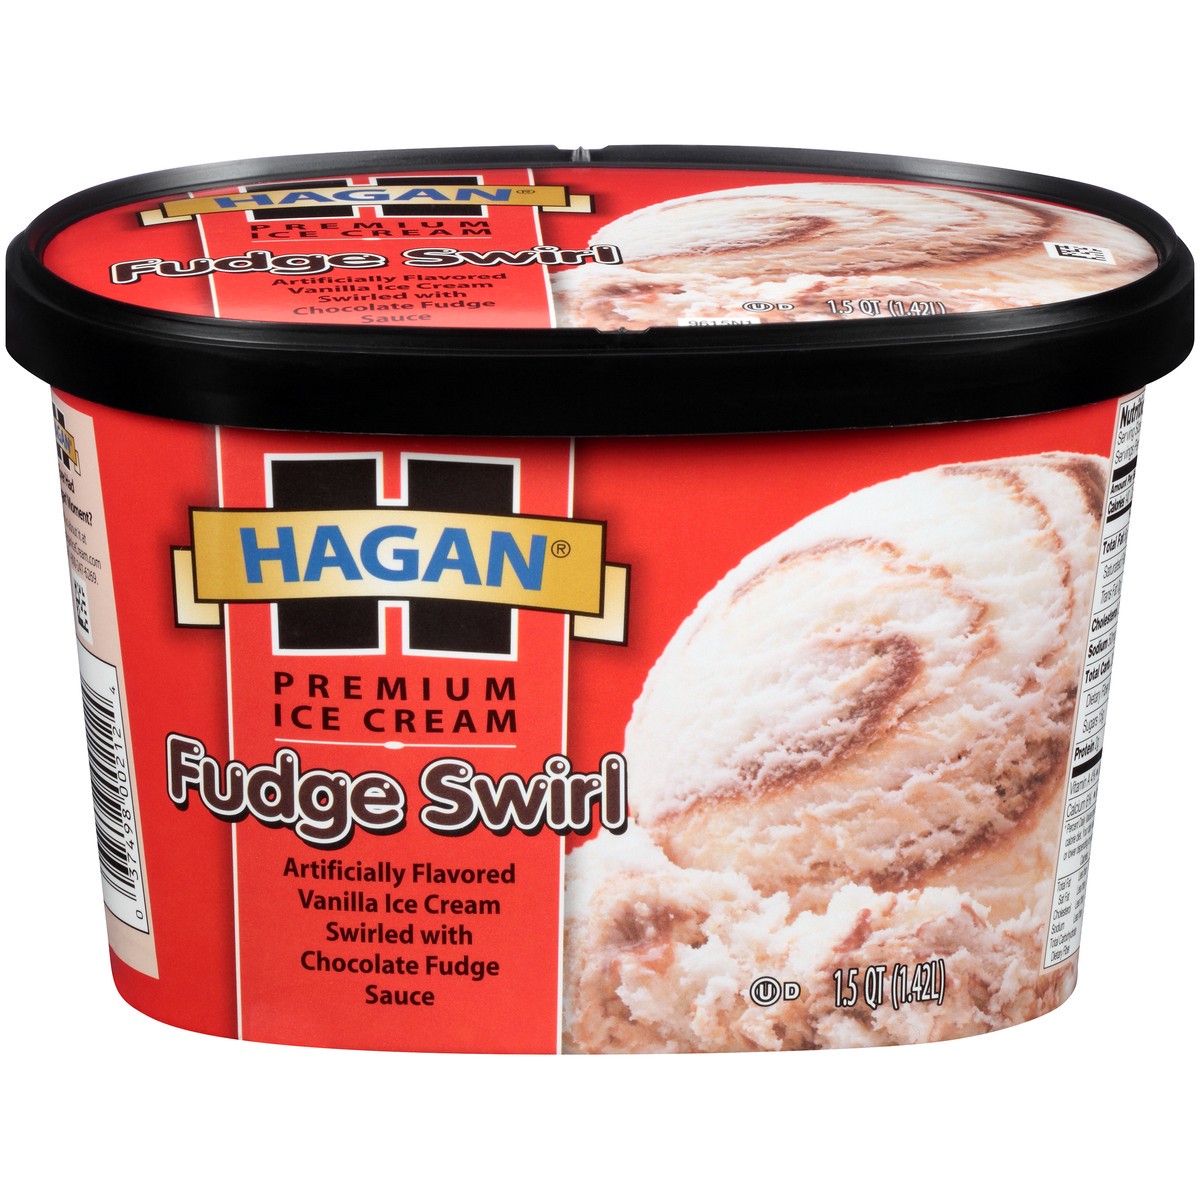 slide 1 of 10, Hagan Fudge Swirl Premium Ice Cream 1.5 qt. Tub, 1.42 liter